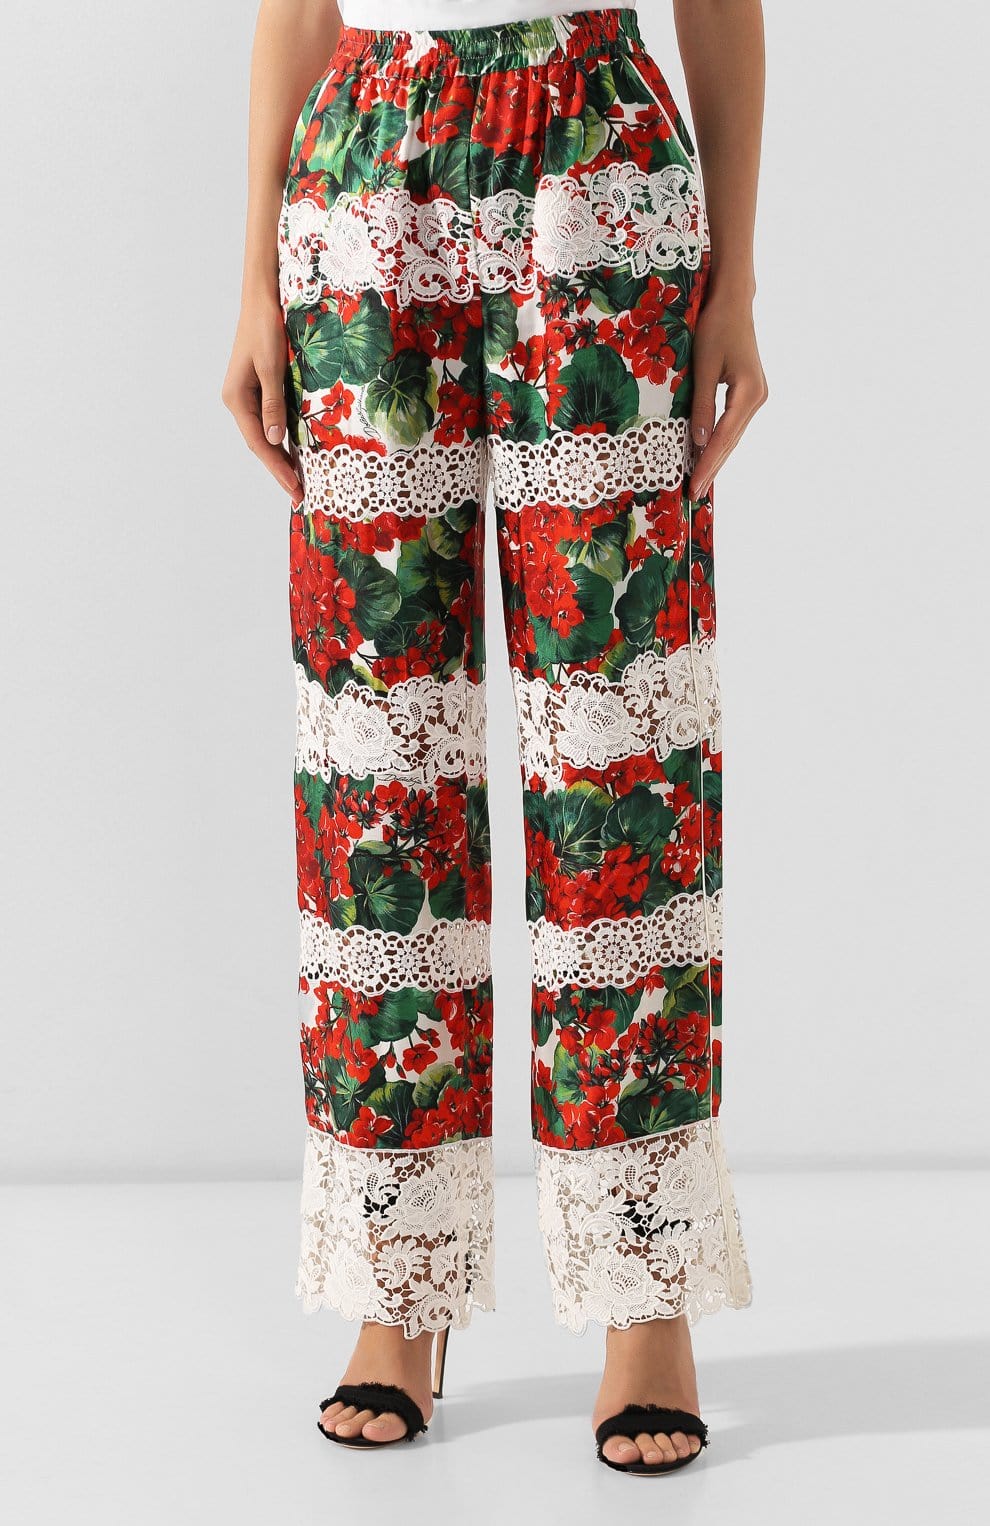 Dolce & Gabbana Foral-Print Lace Pants